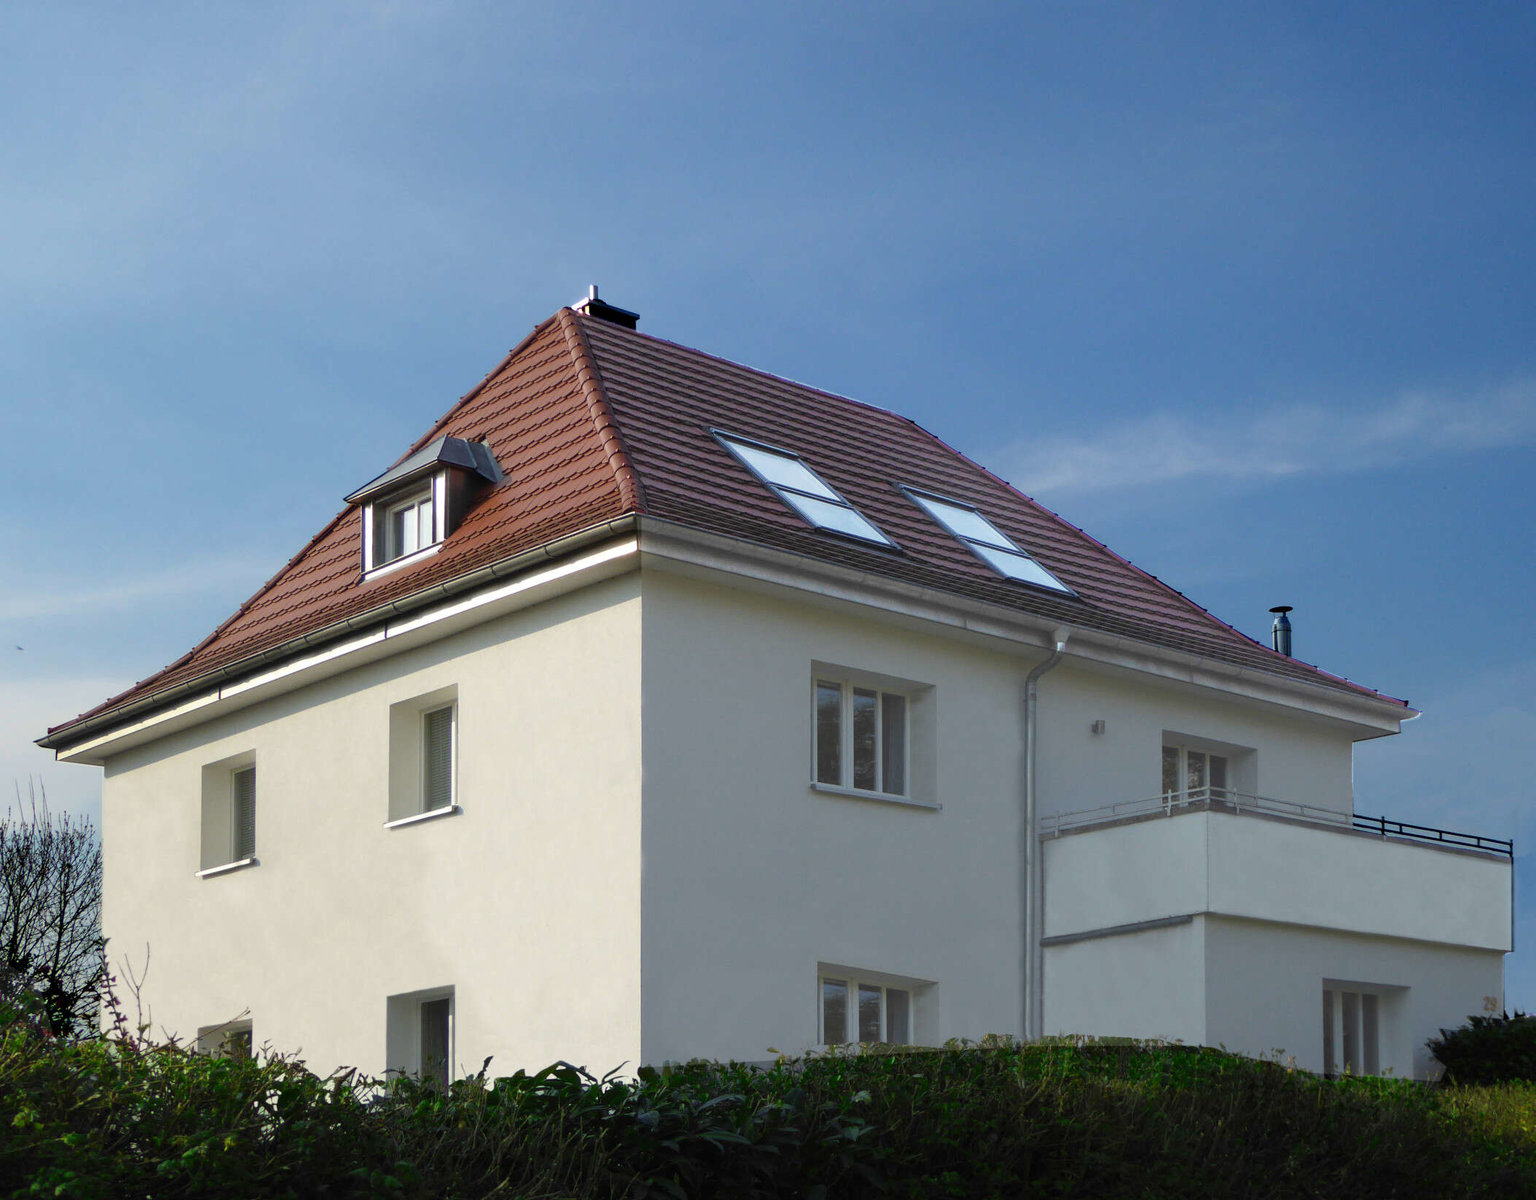 Steildach eines Einfamilienhauses der Willi Kliem GmbH